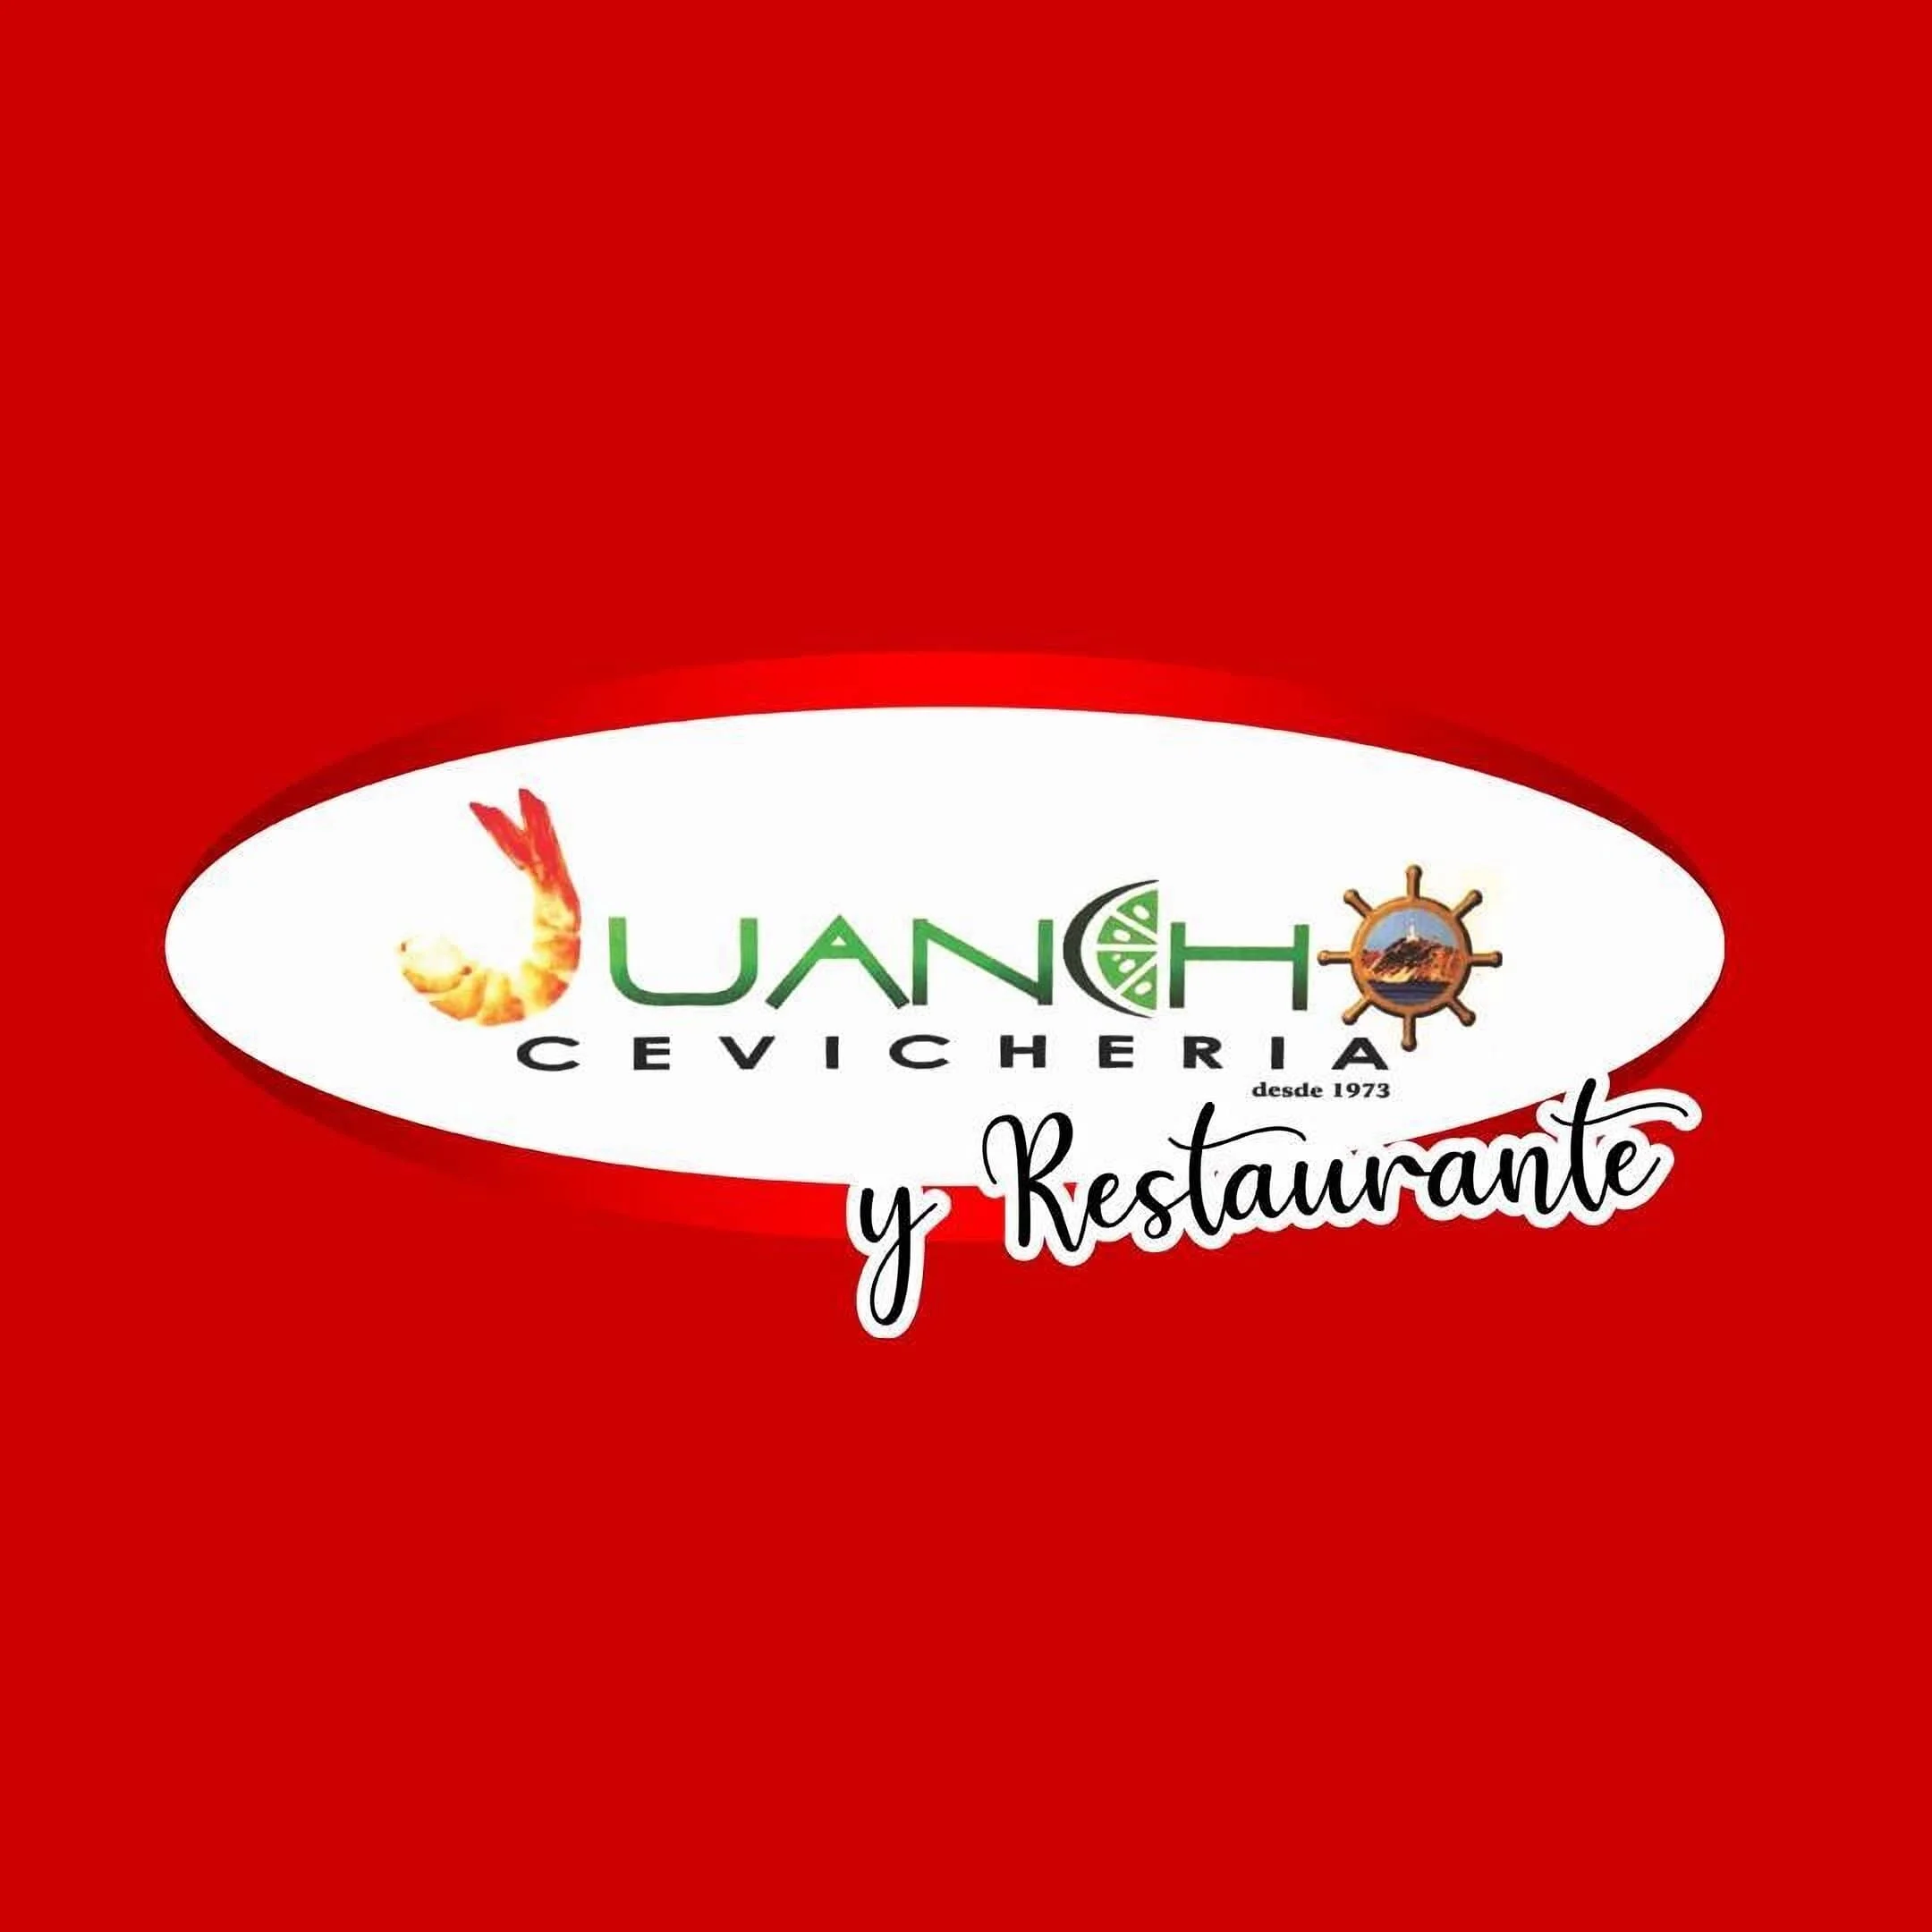 Juancho Cevicheria y Restaurante-7805